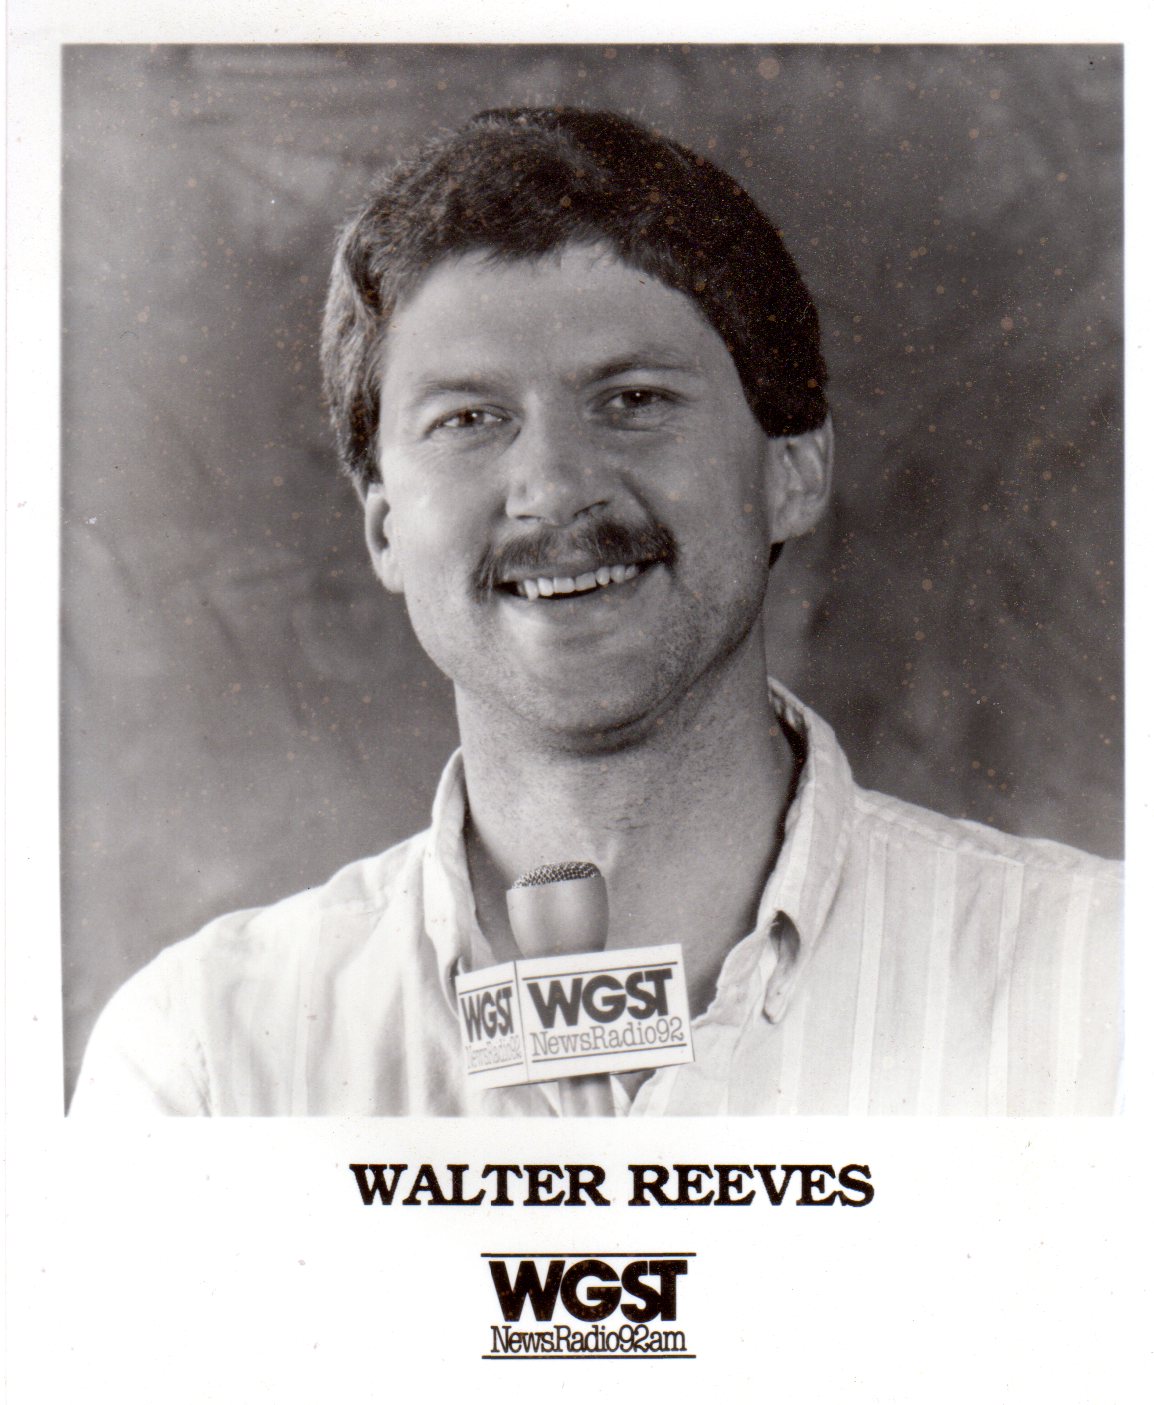 History Of Walter Reeves Radio Career Walter Reeves The Georgia Gardener 